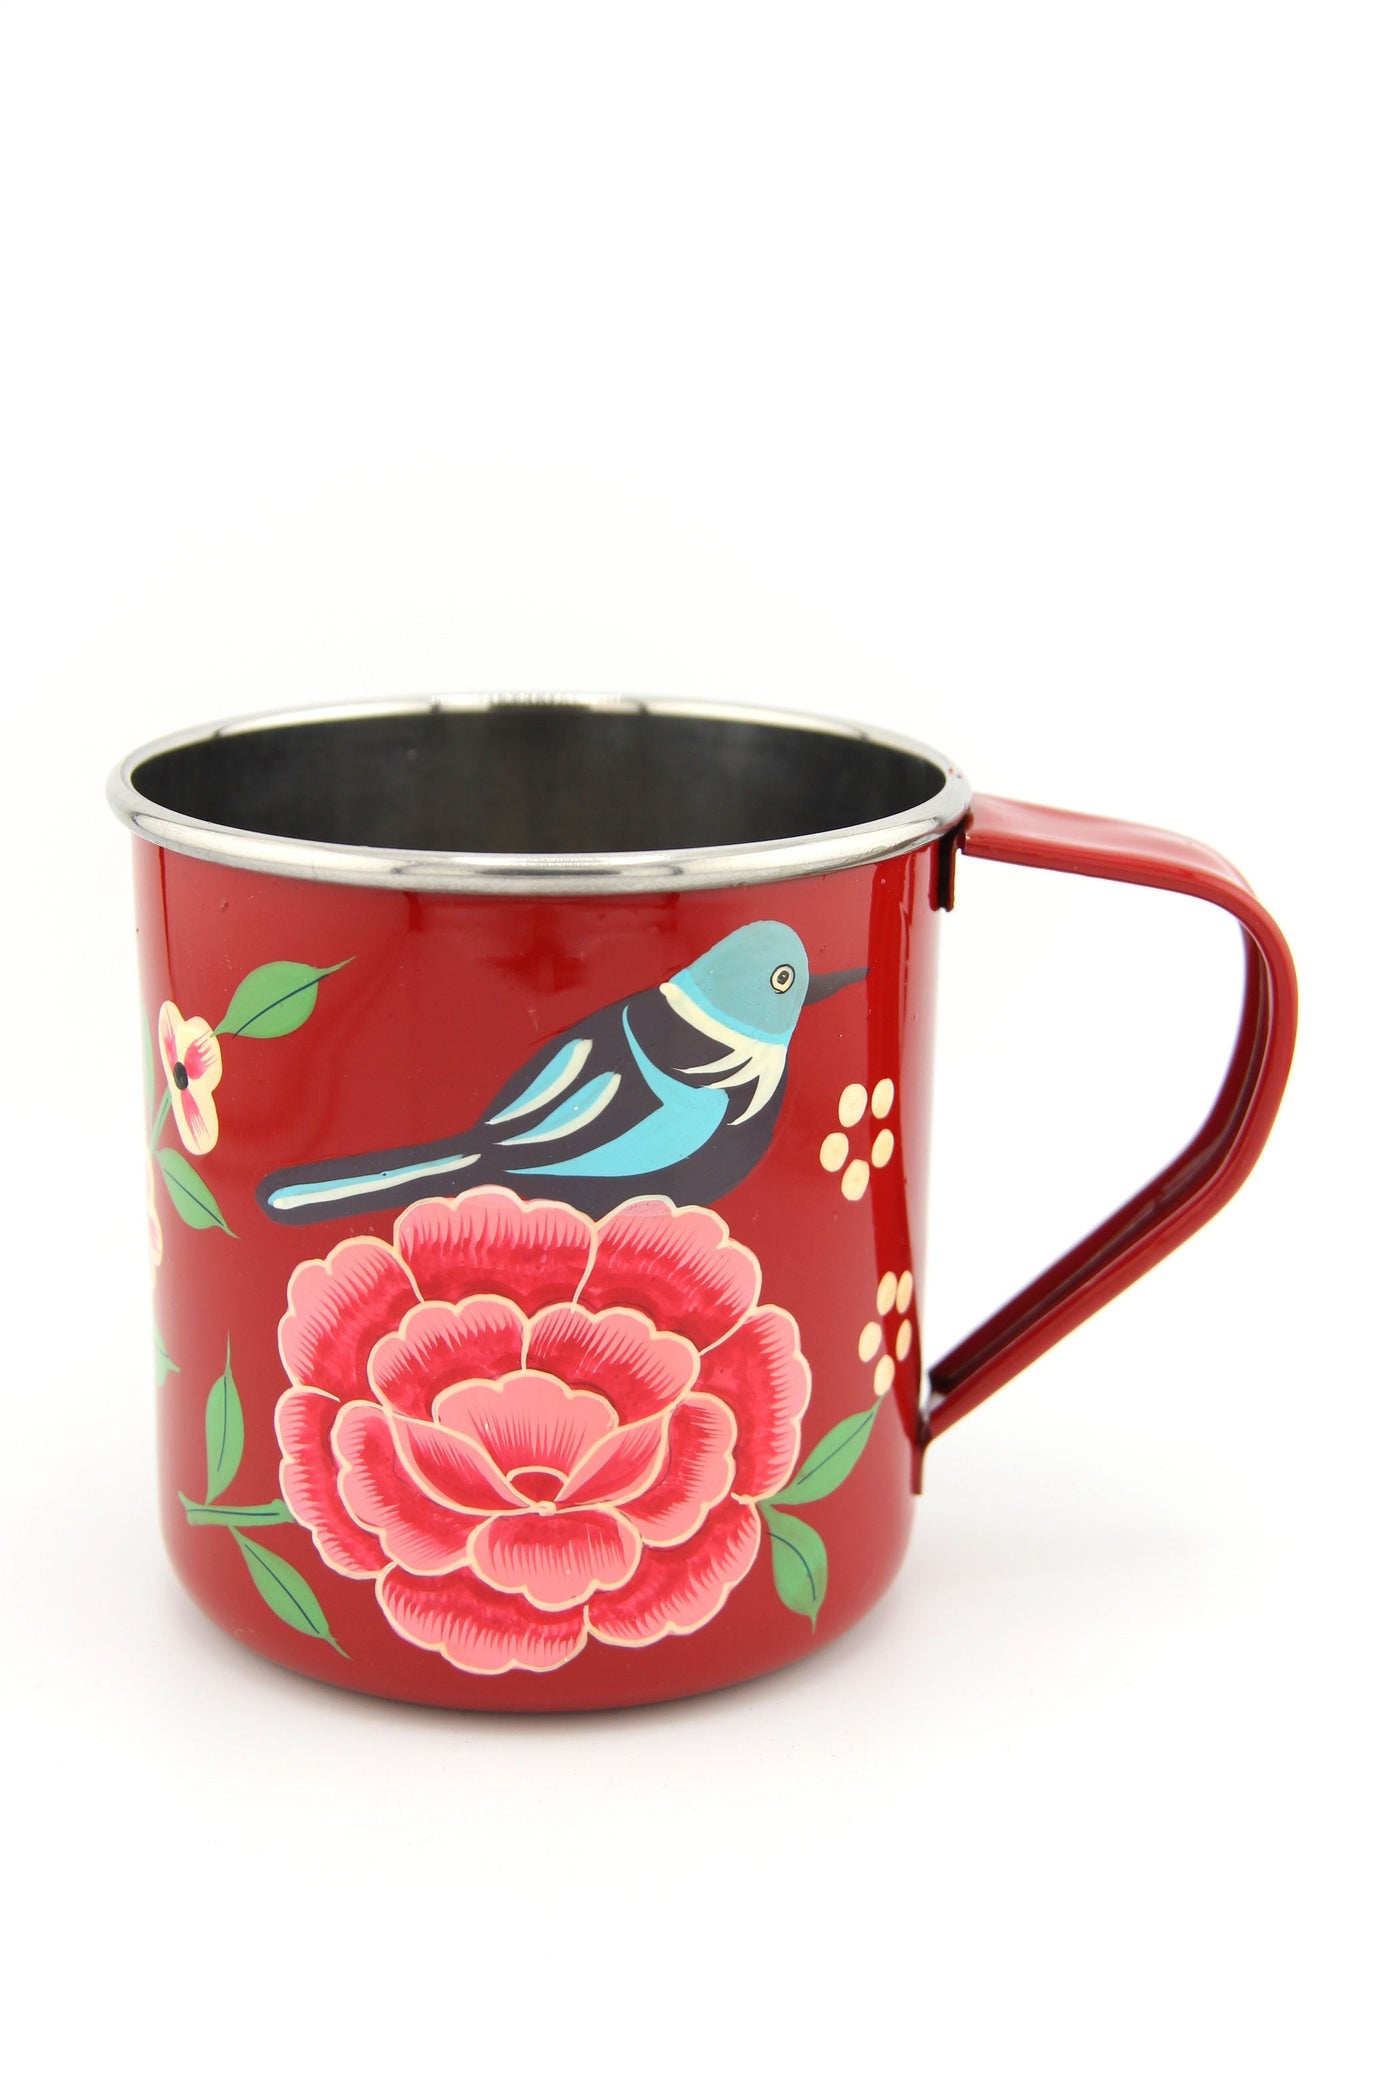 Floral Handpainted Stainless Steel Enamel Mug from Kashmir